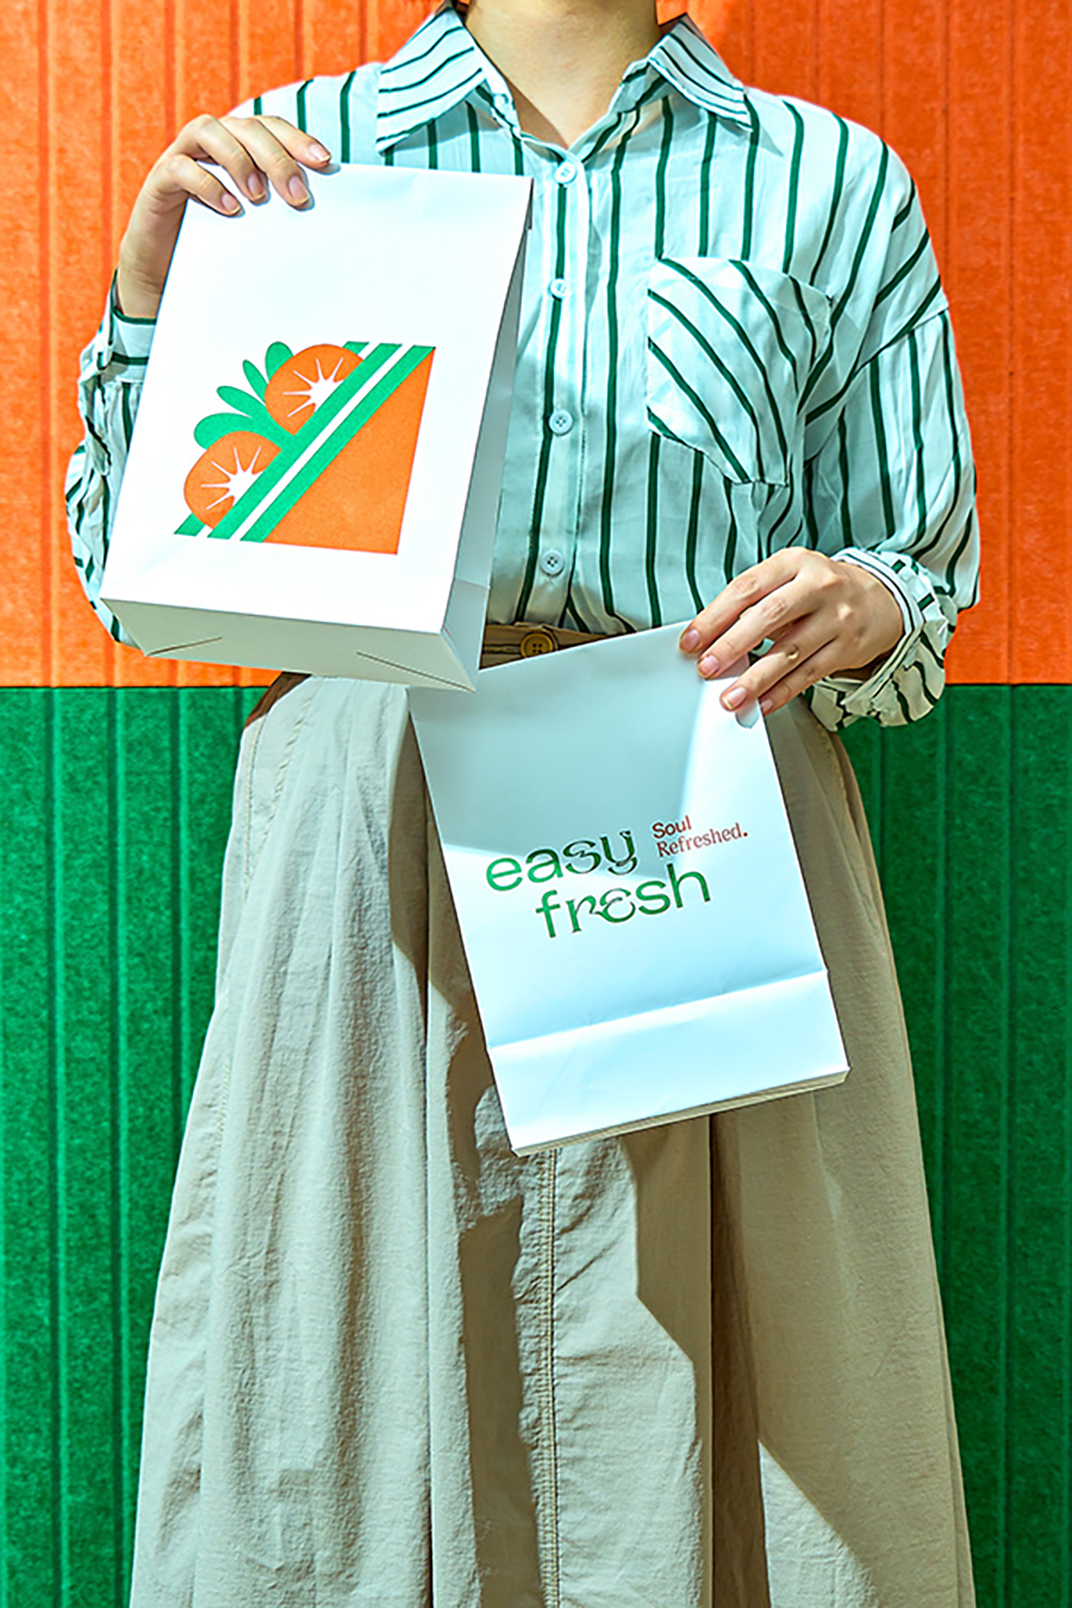 易鲜Easy Fresh餐厅 澳门  北京 上海 珠海 成都 武汉 杭州 广州 香港 澳门 logo设计 vi设计 空间设计